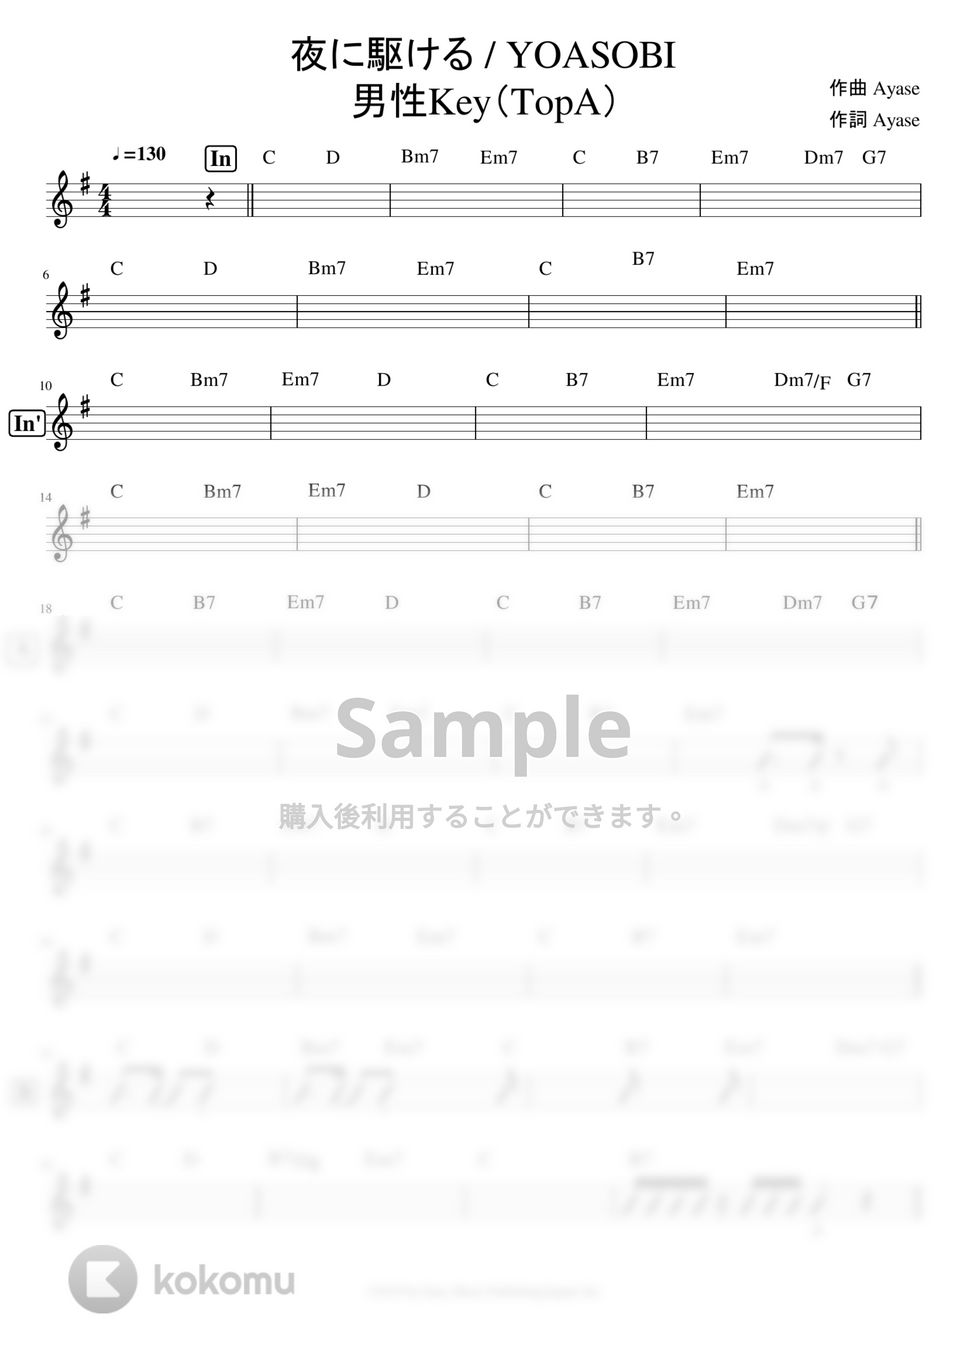 YOASOBI - ※Sample 「夜に駆ける」 サイズ譜(コード付き)※男声アレンジ (男声キーに編曲したサイズ譜です。) by ましまし